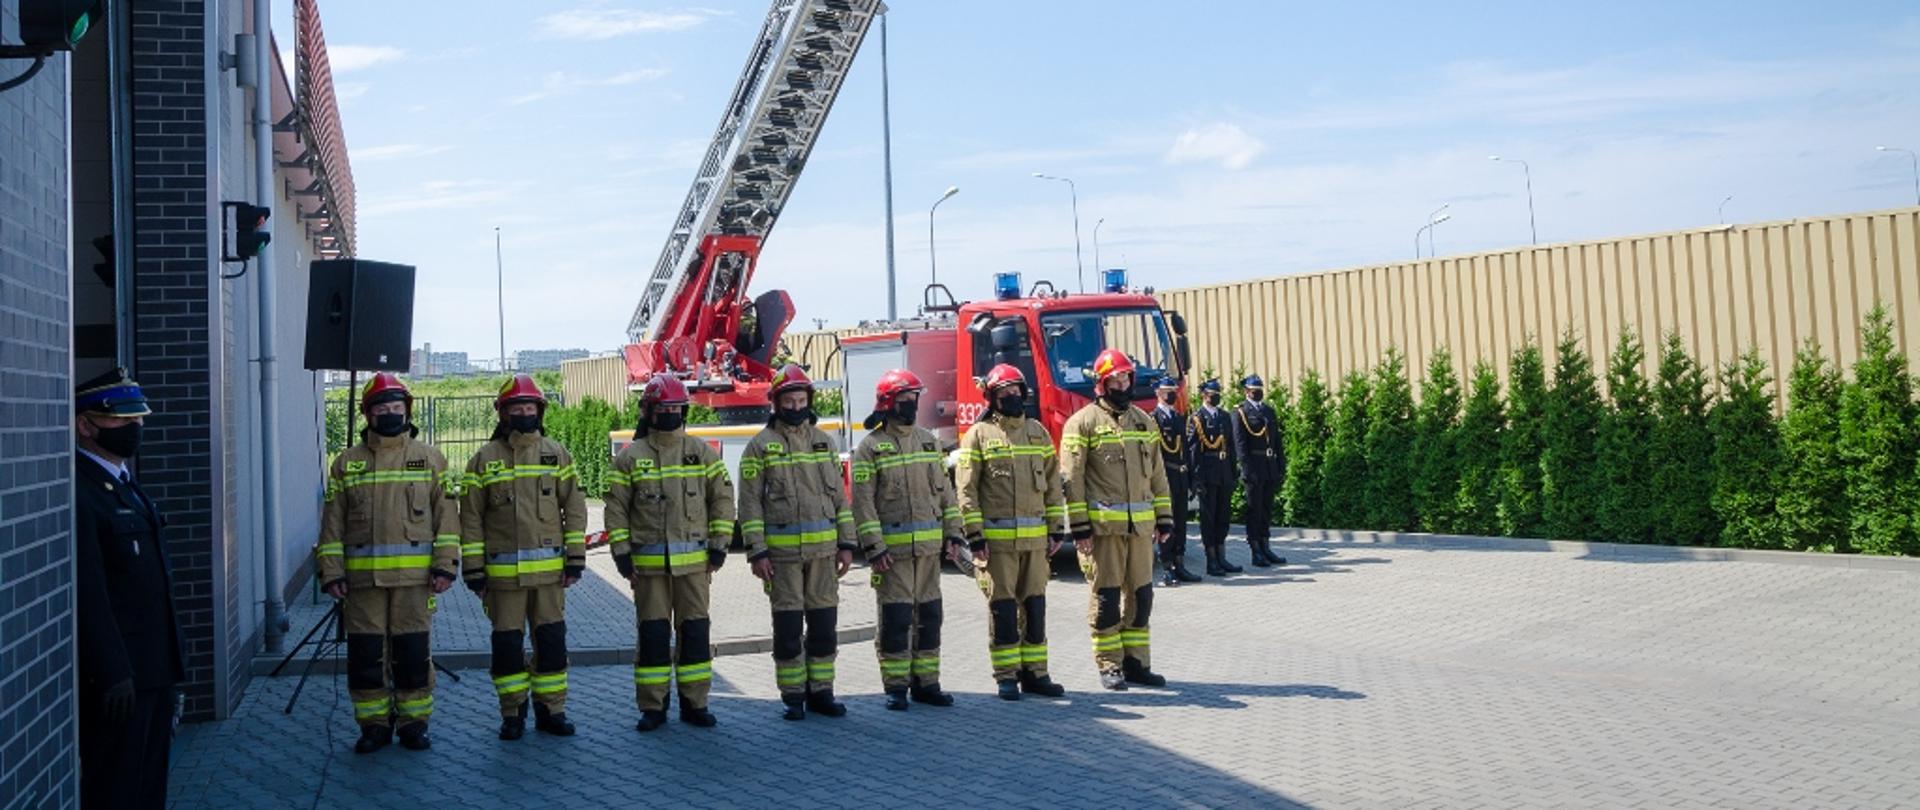 Wręczenie promes mazowieckim OSP – na zdjęciu siedmiu strażaków. Na drugim planie samochód strażacki z drabiną, na której powiewa flaga biało-czerwona.